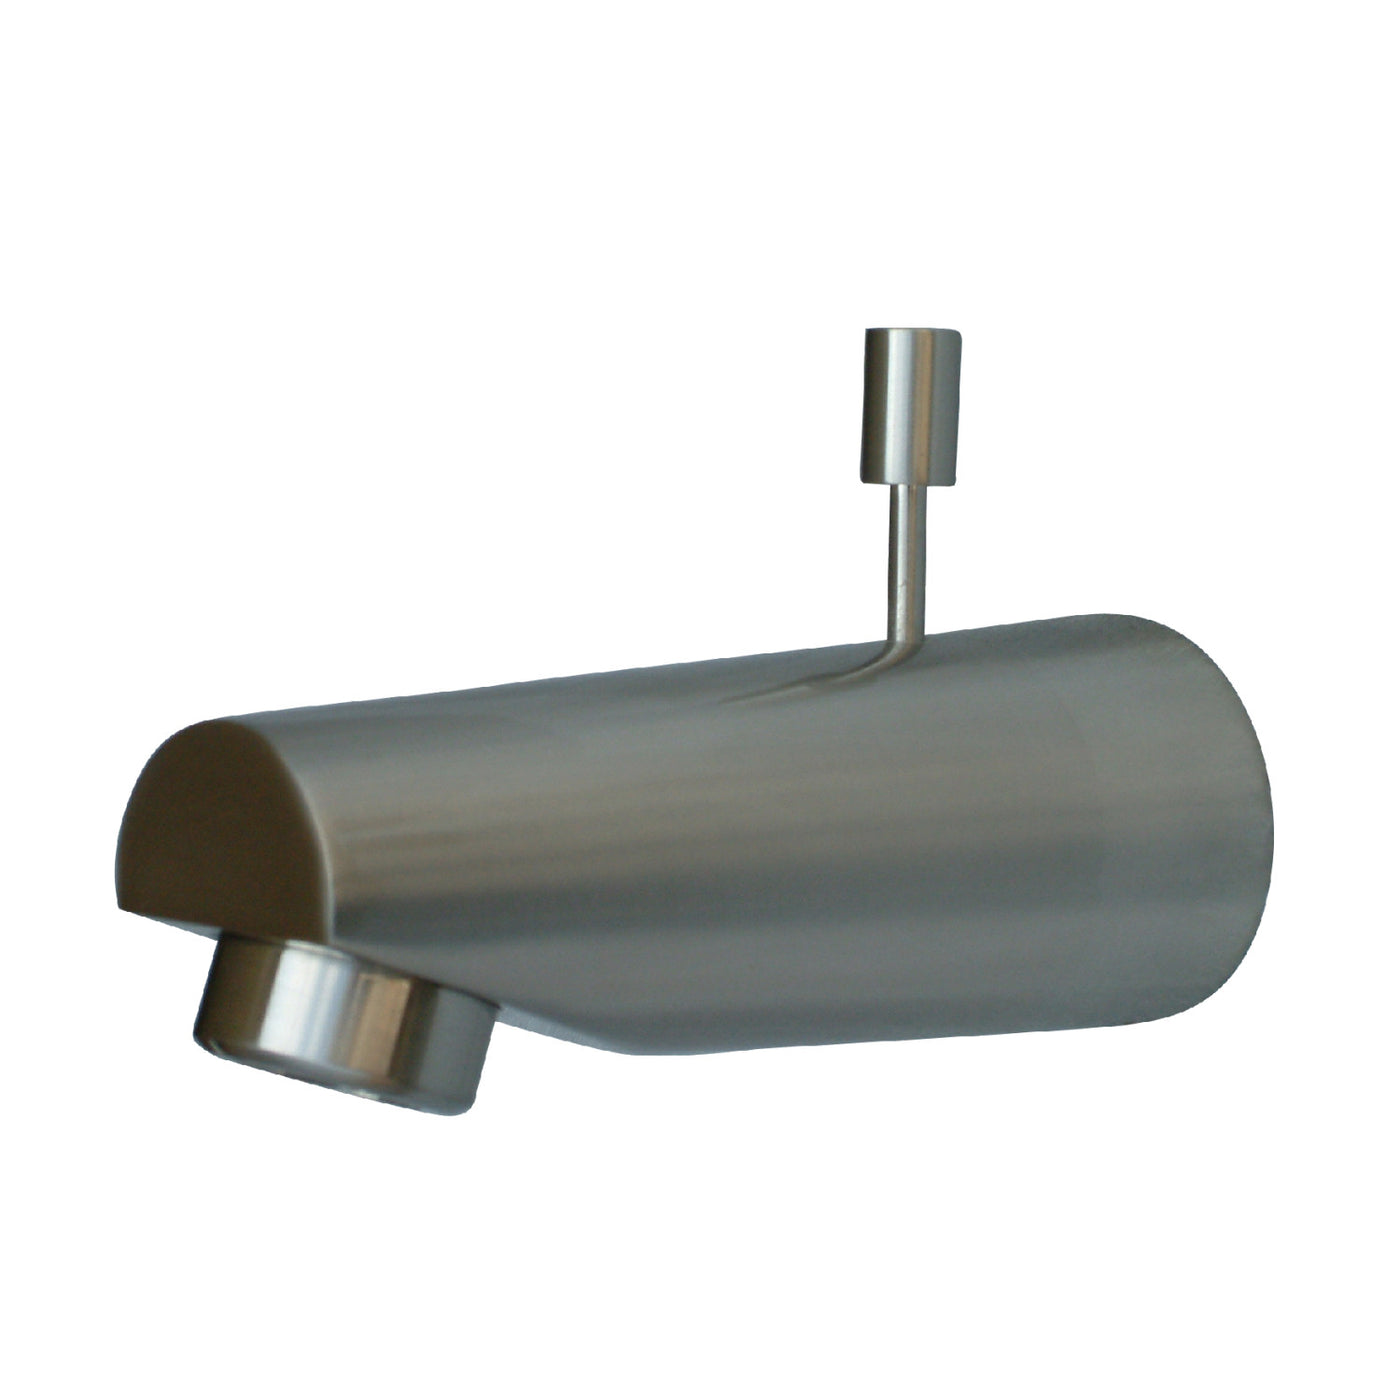 Elements of Design DK6184A8 Diverter Tub Spout, Brushed Nickel